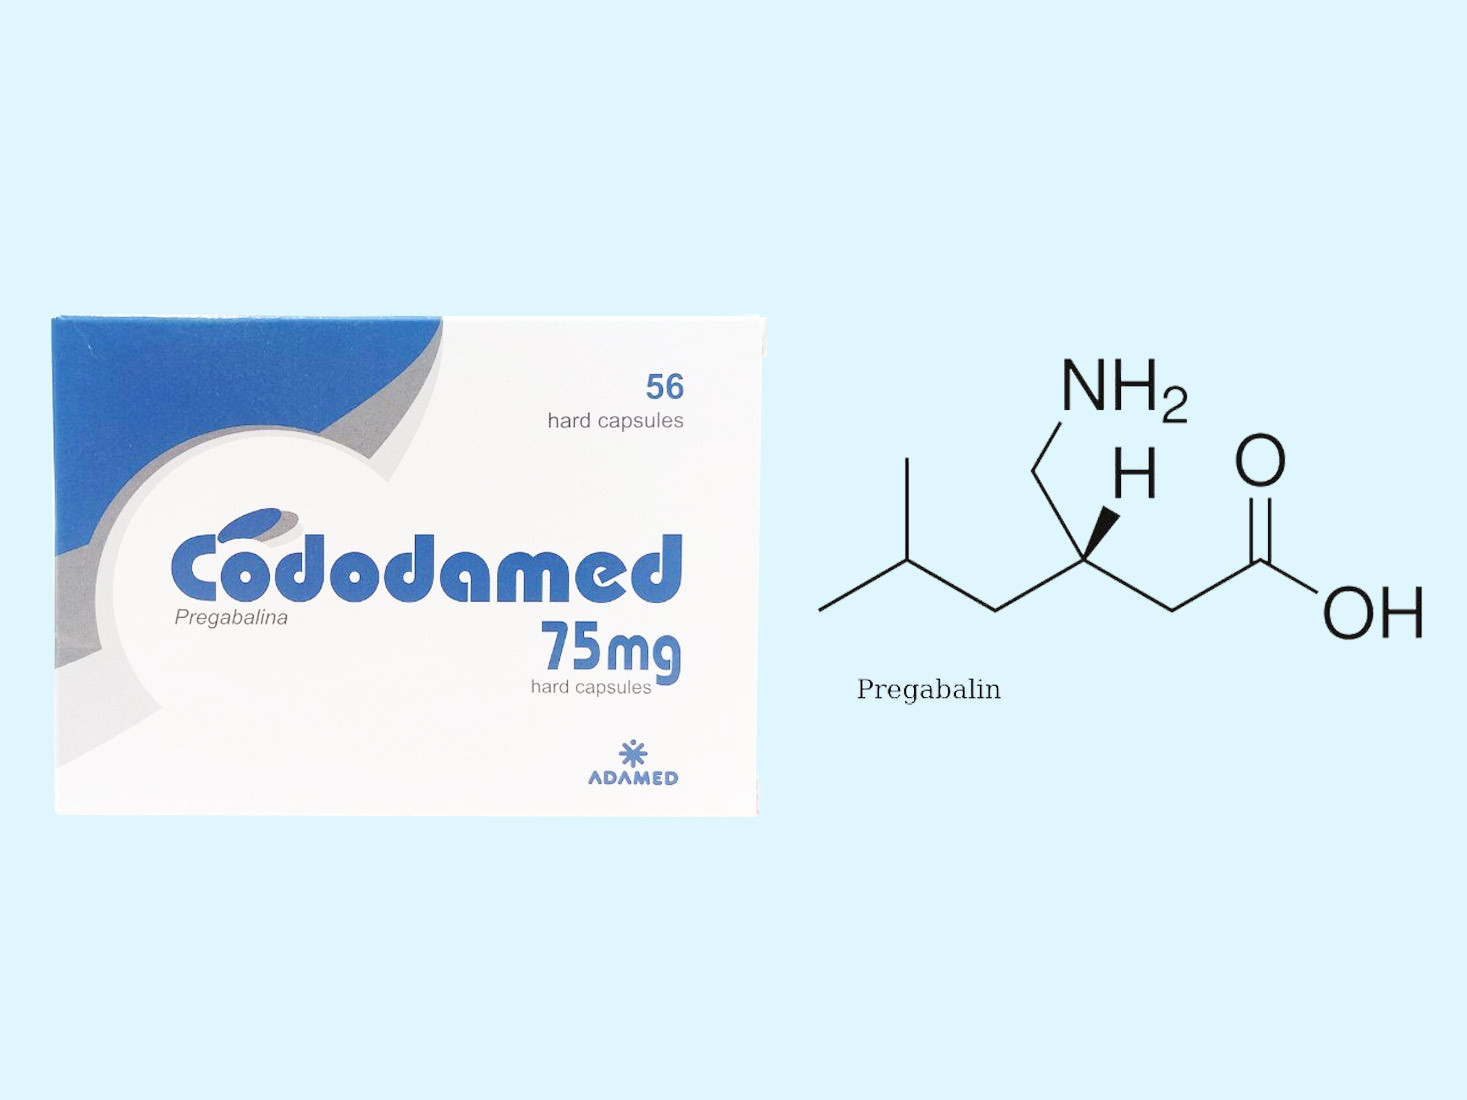 Công thức cấu tạo của hoạt chất Pregabalin có trong Cododamed 75mg